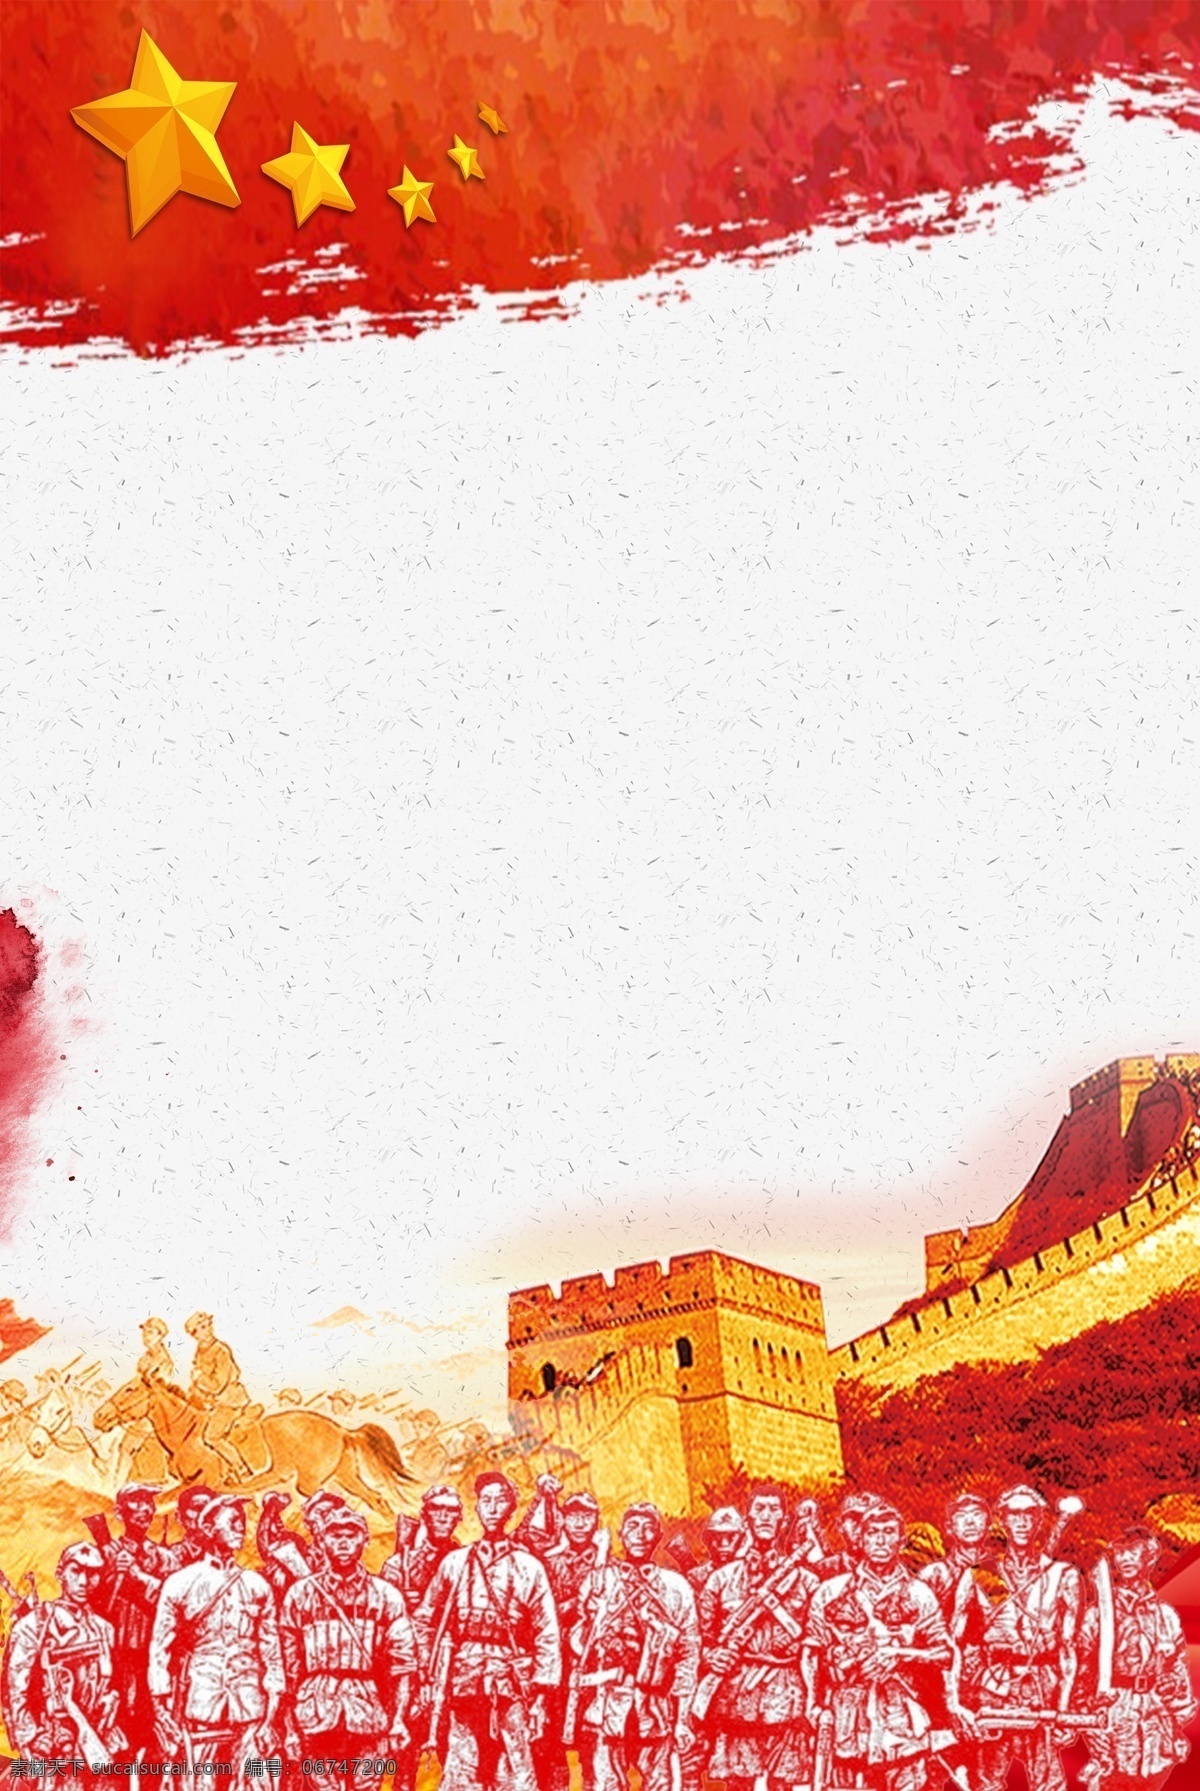 抗日战争 胜利 周年 海报 抗日 战争 73周年 中国红 革命 胜利纪念 红旗 万里长城 五角星 革命战士